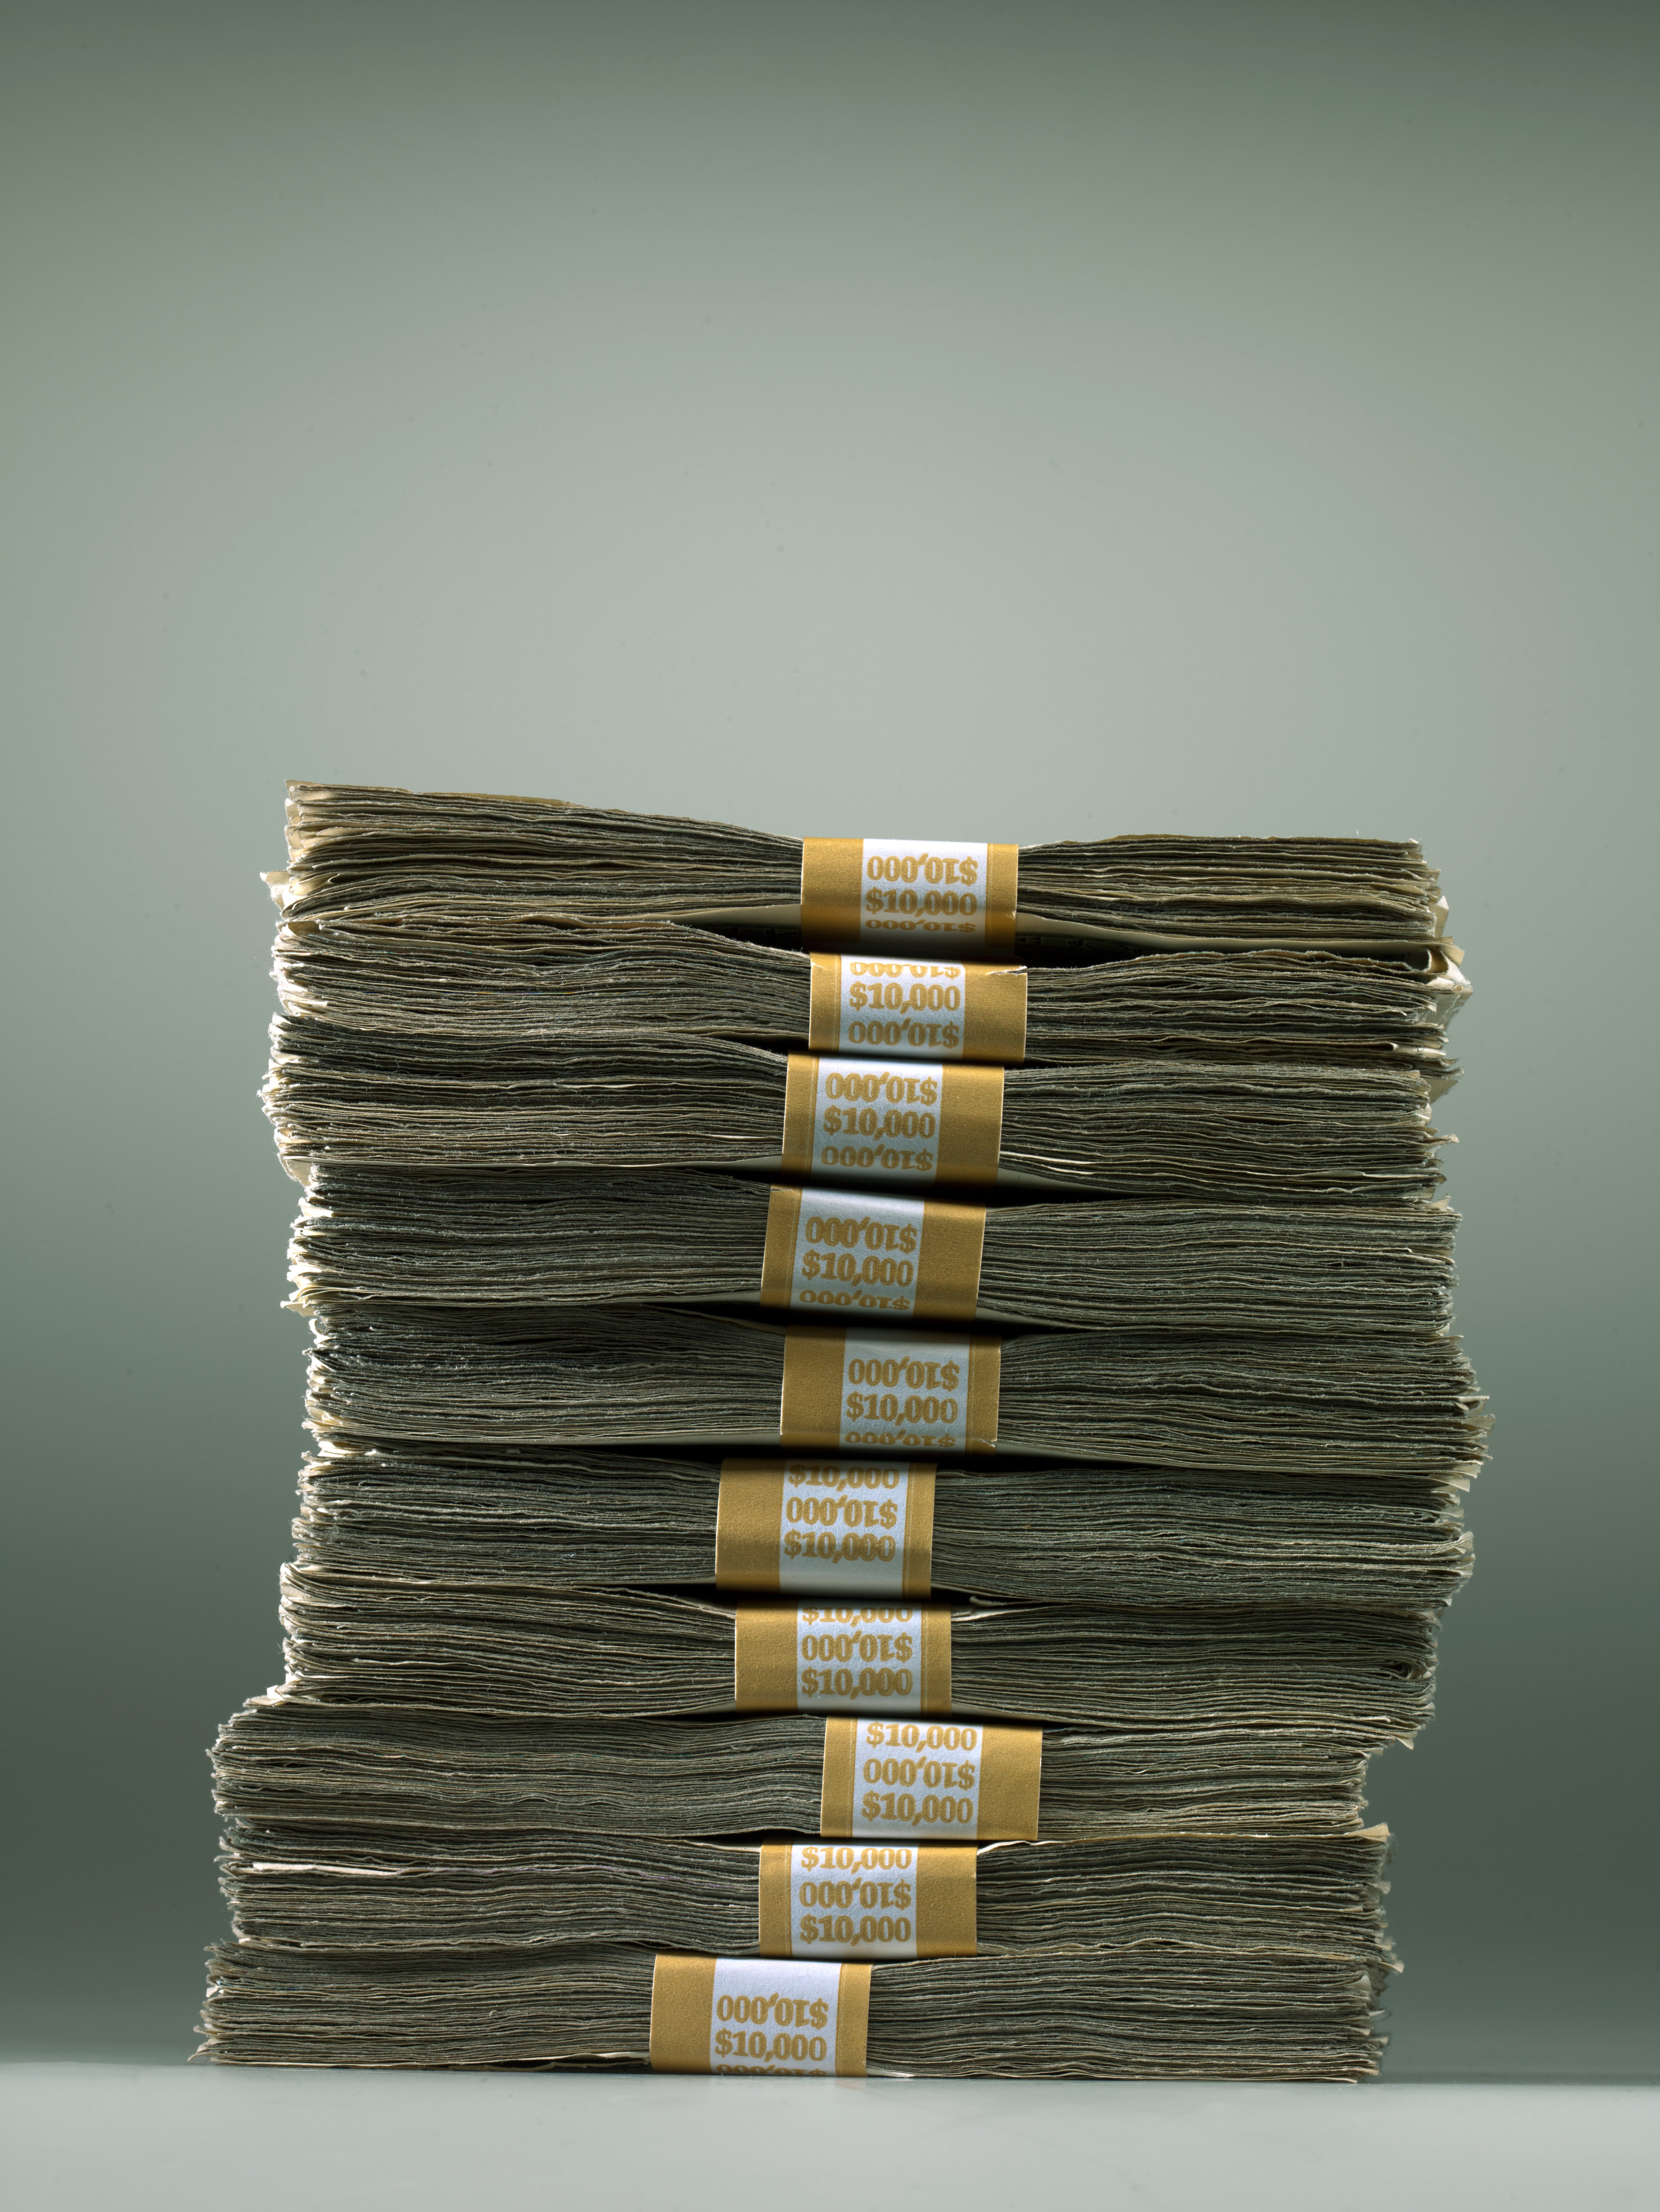 money-bill-stack